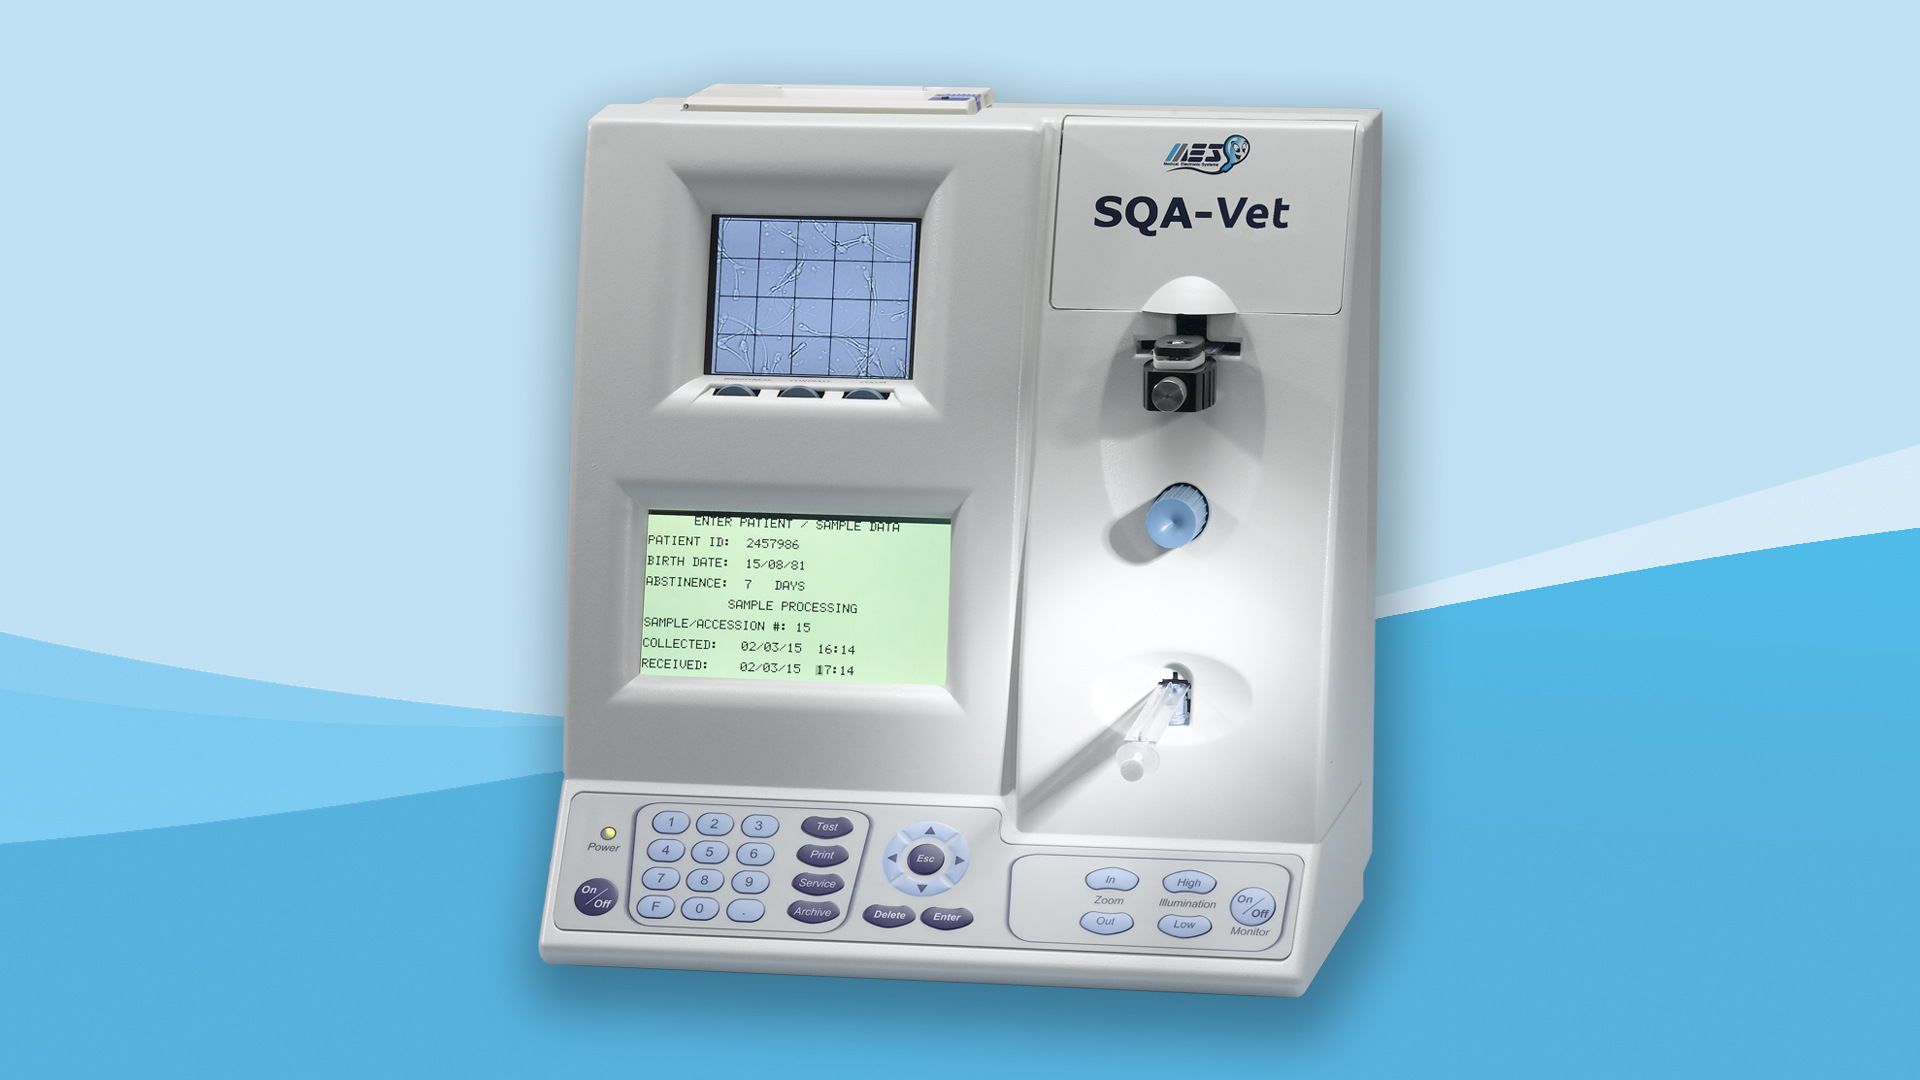 Автоматический анализатор качества спермы для животных SQA-V Vet — измерение и расчет показателей согласно ВОЗ 5-издания, визуализация и передача результатов на компьютер